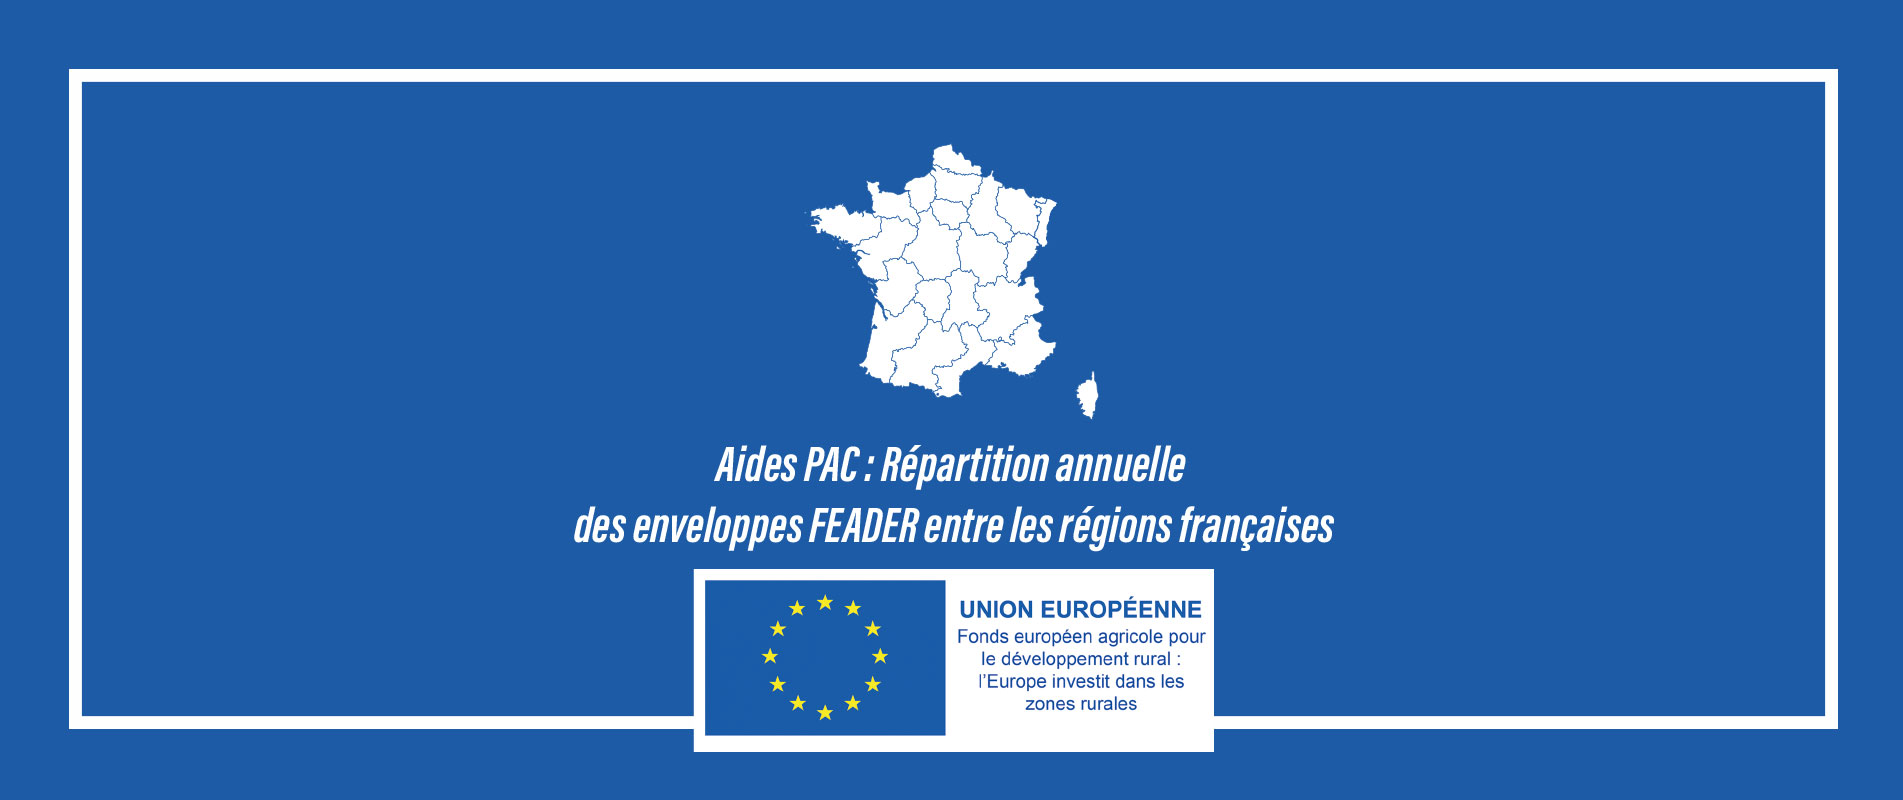 Aides PAC : Répartition annuelle des enveloppes FEADER entre les régions françaises